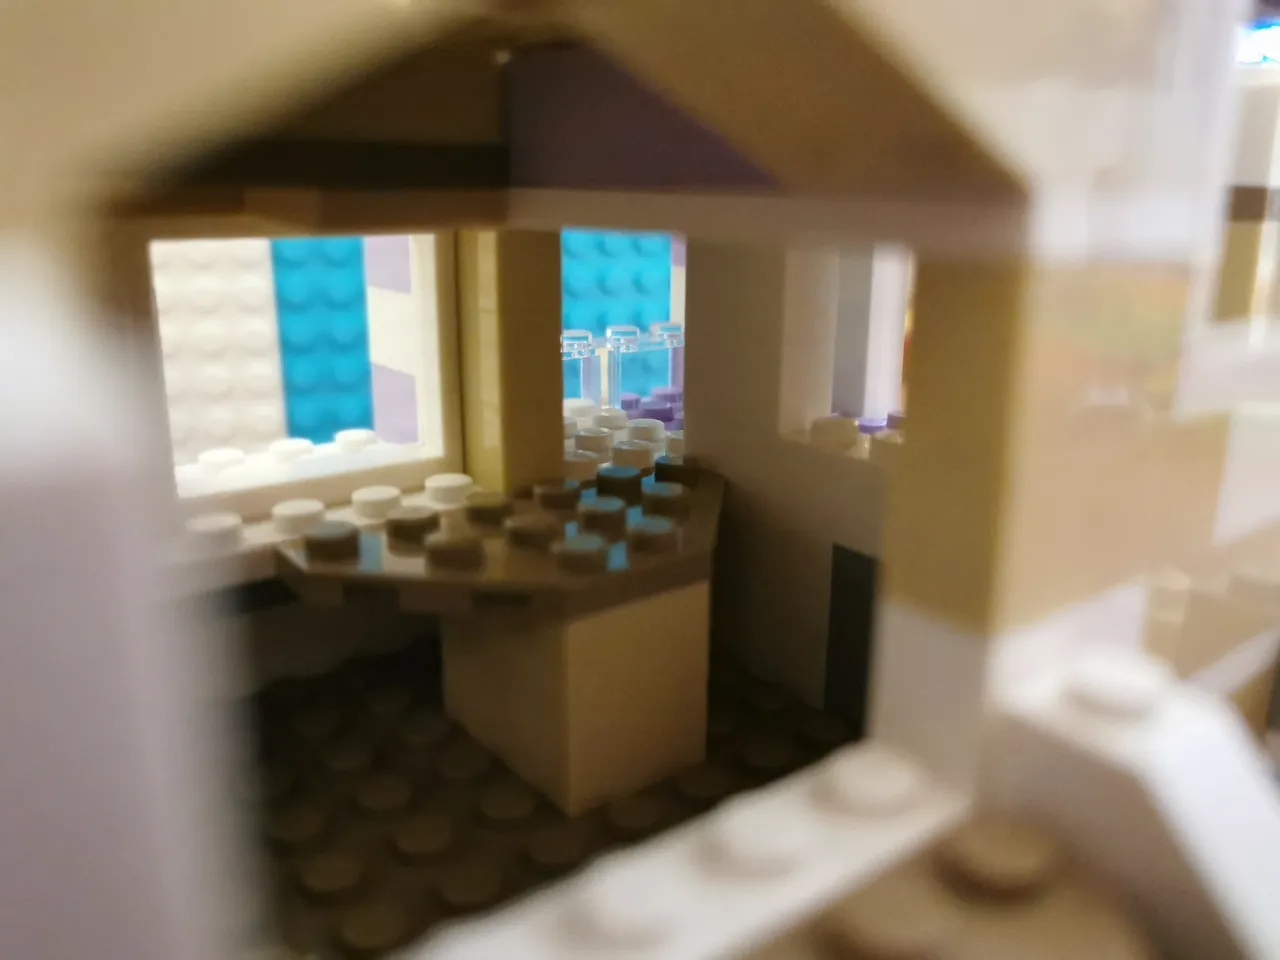 Lego House 19.jpg